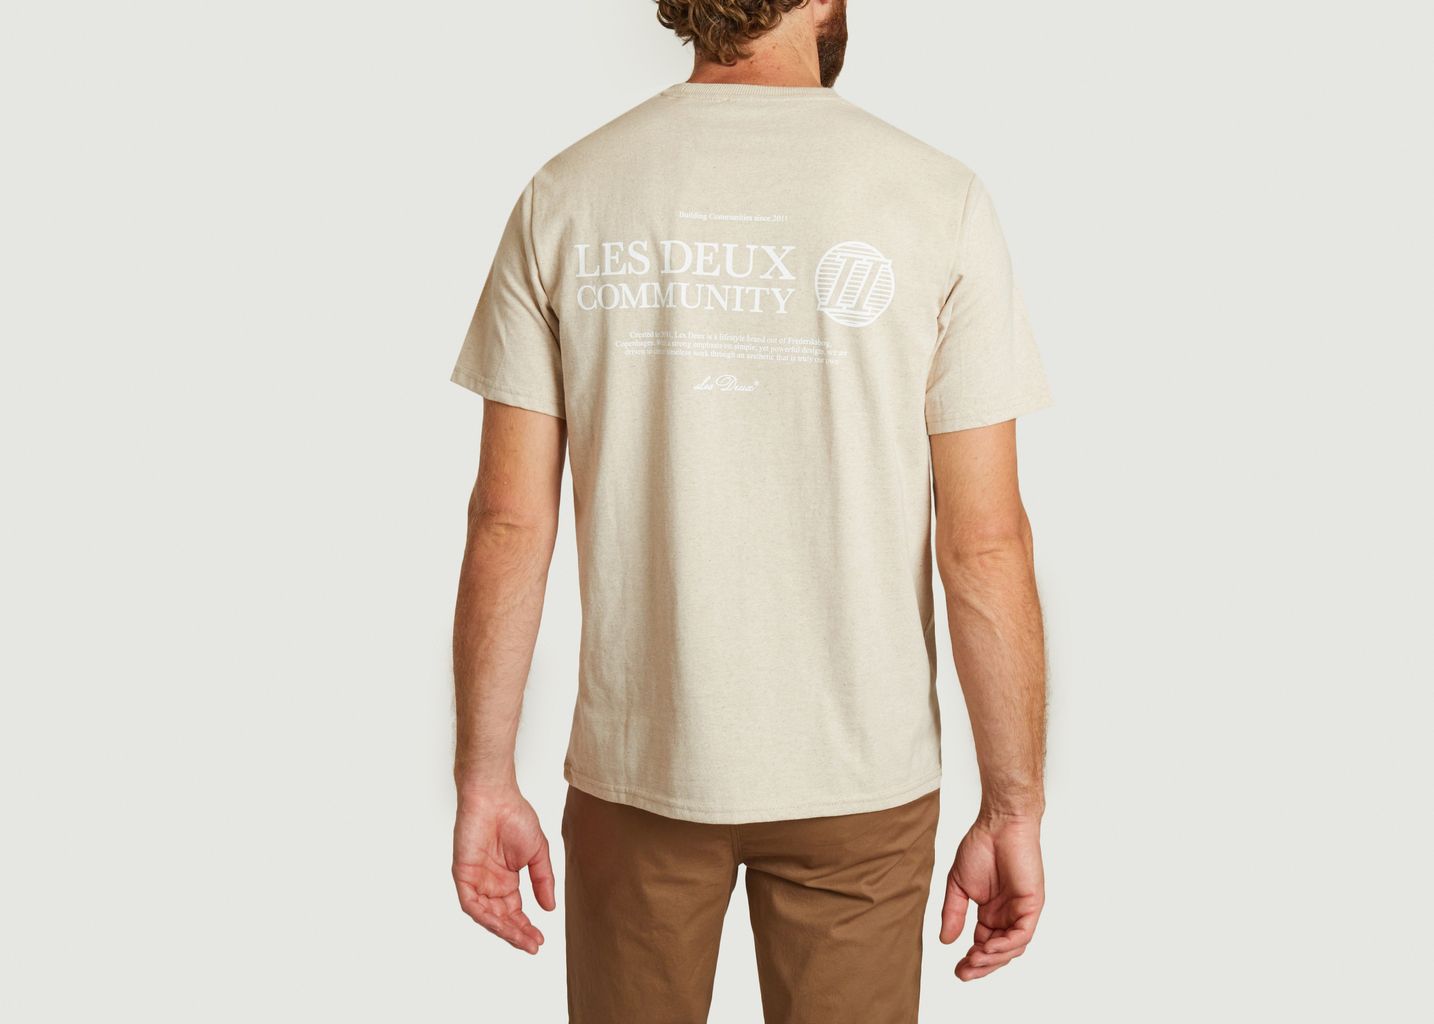 Community T-shirt - Les Deux